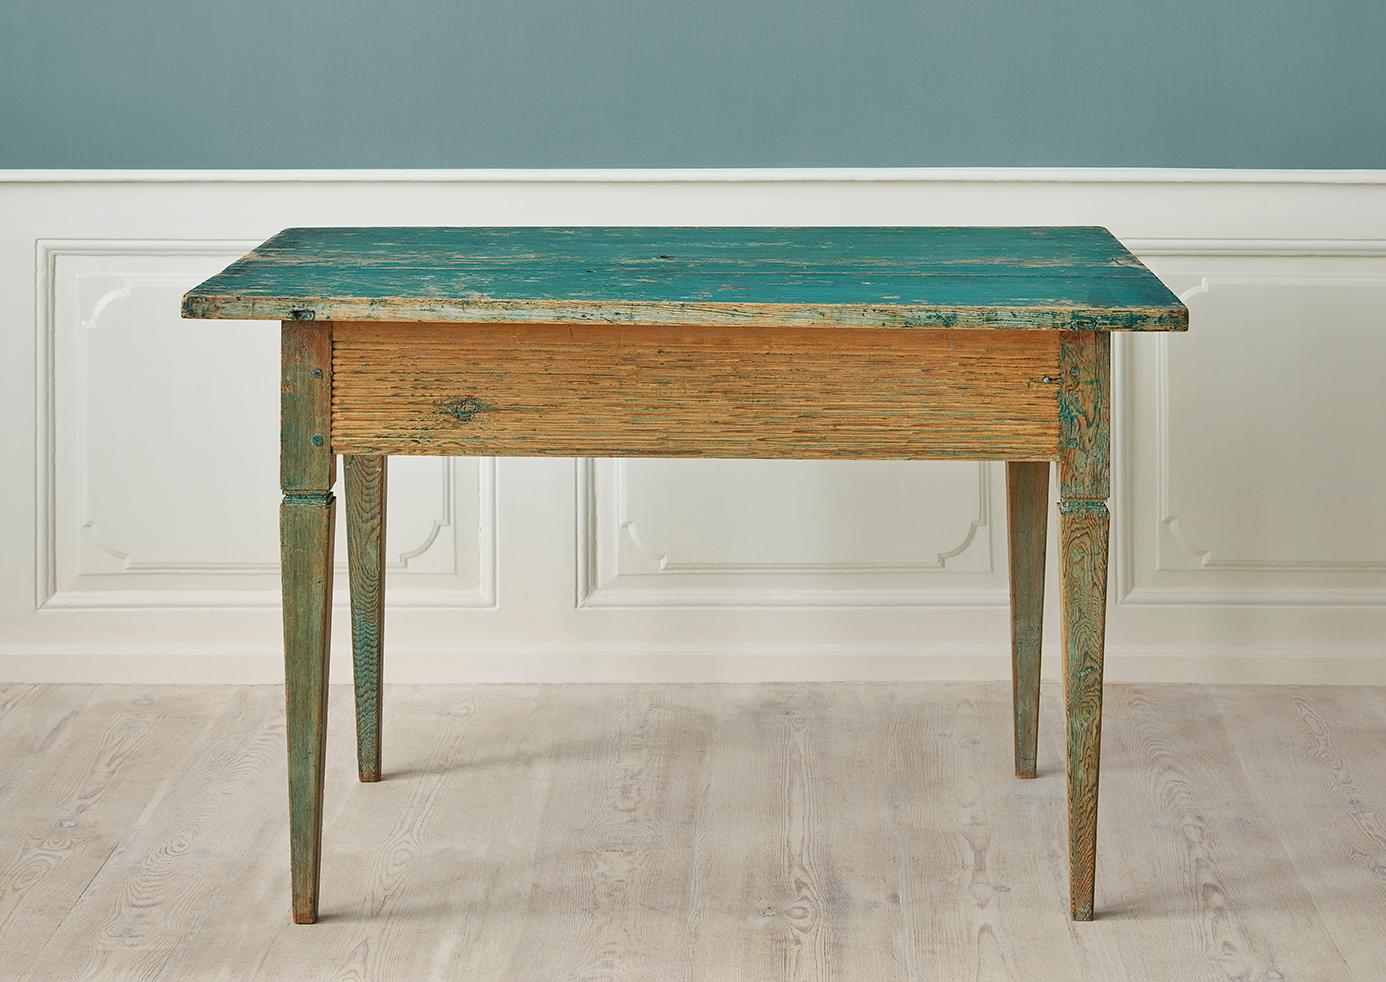 Suède, fin du 18e siècle

Ancienne table autrichienne authentique de Suède, fabriquée vers 1790. Peint en vert. 

H 77 x L 117 x P 81 cm